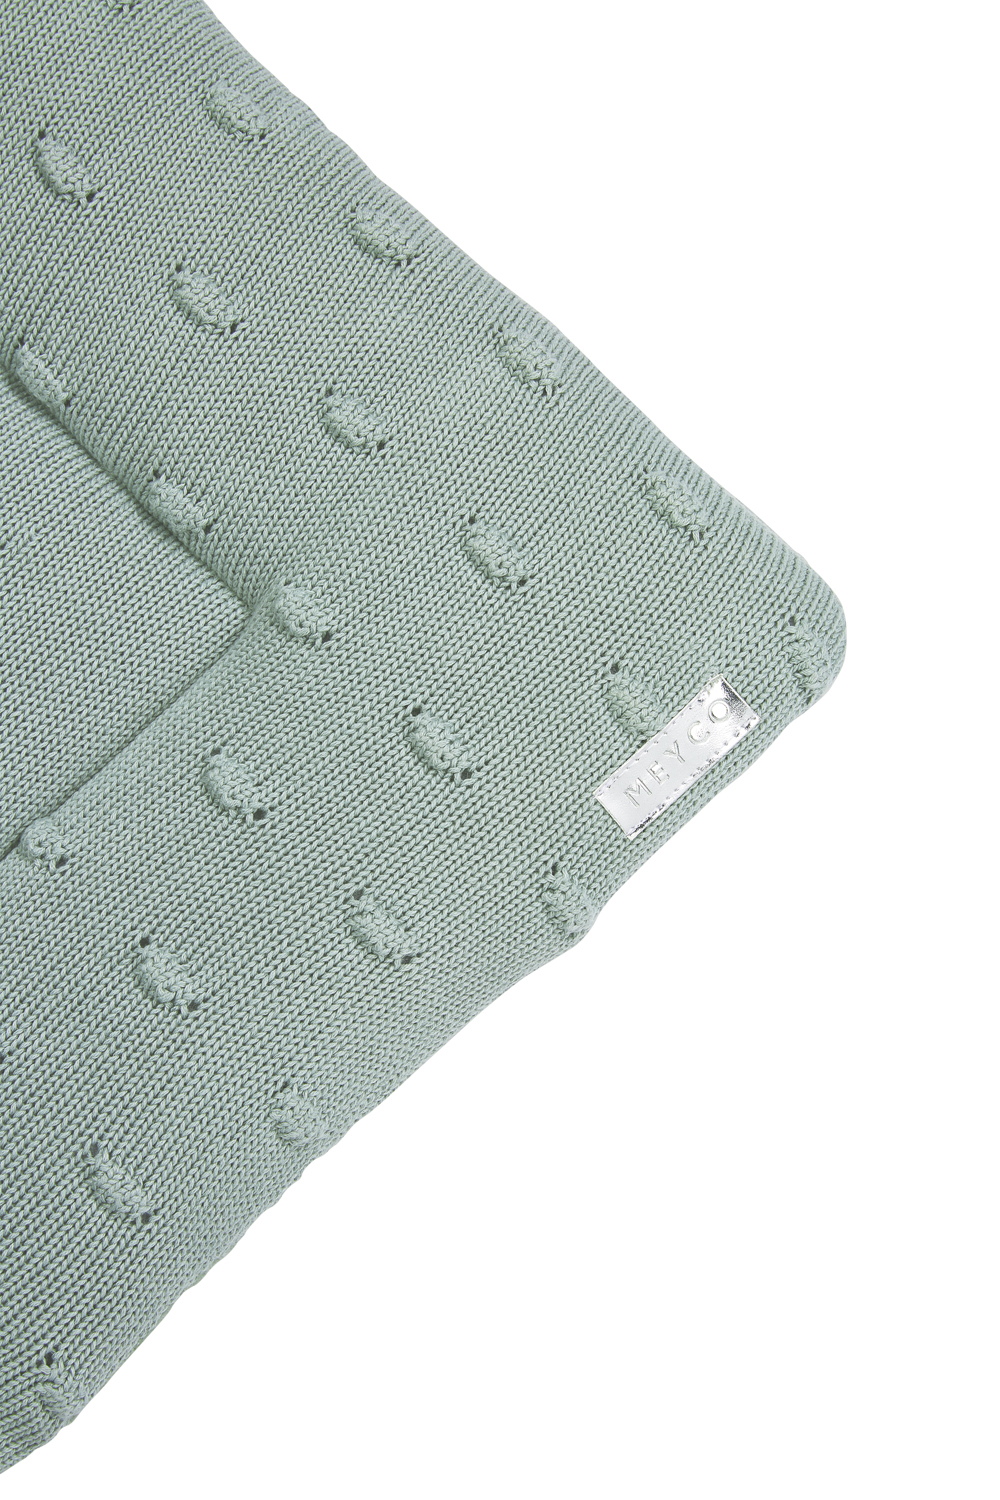 Boxkleed Knots - Stone Green - 77x97cm